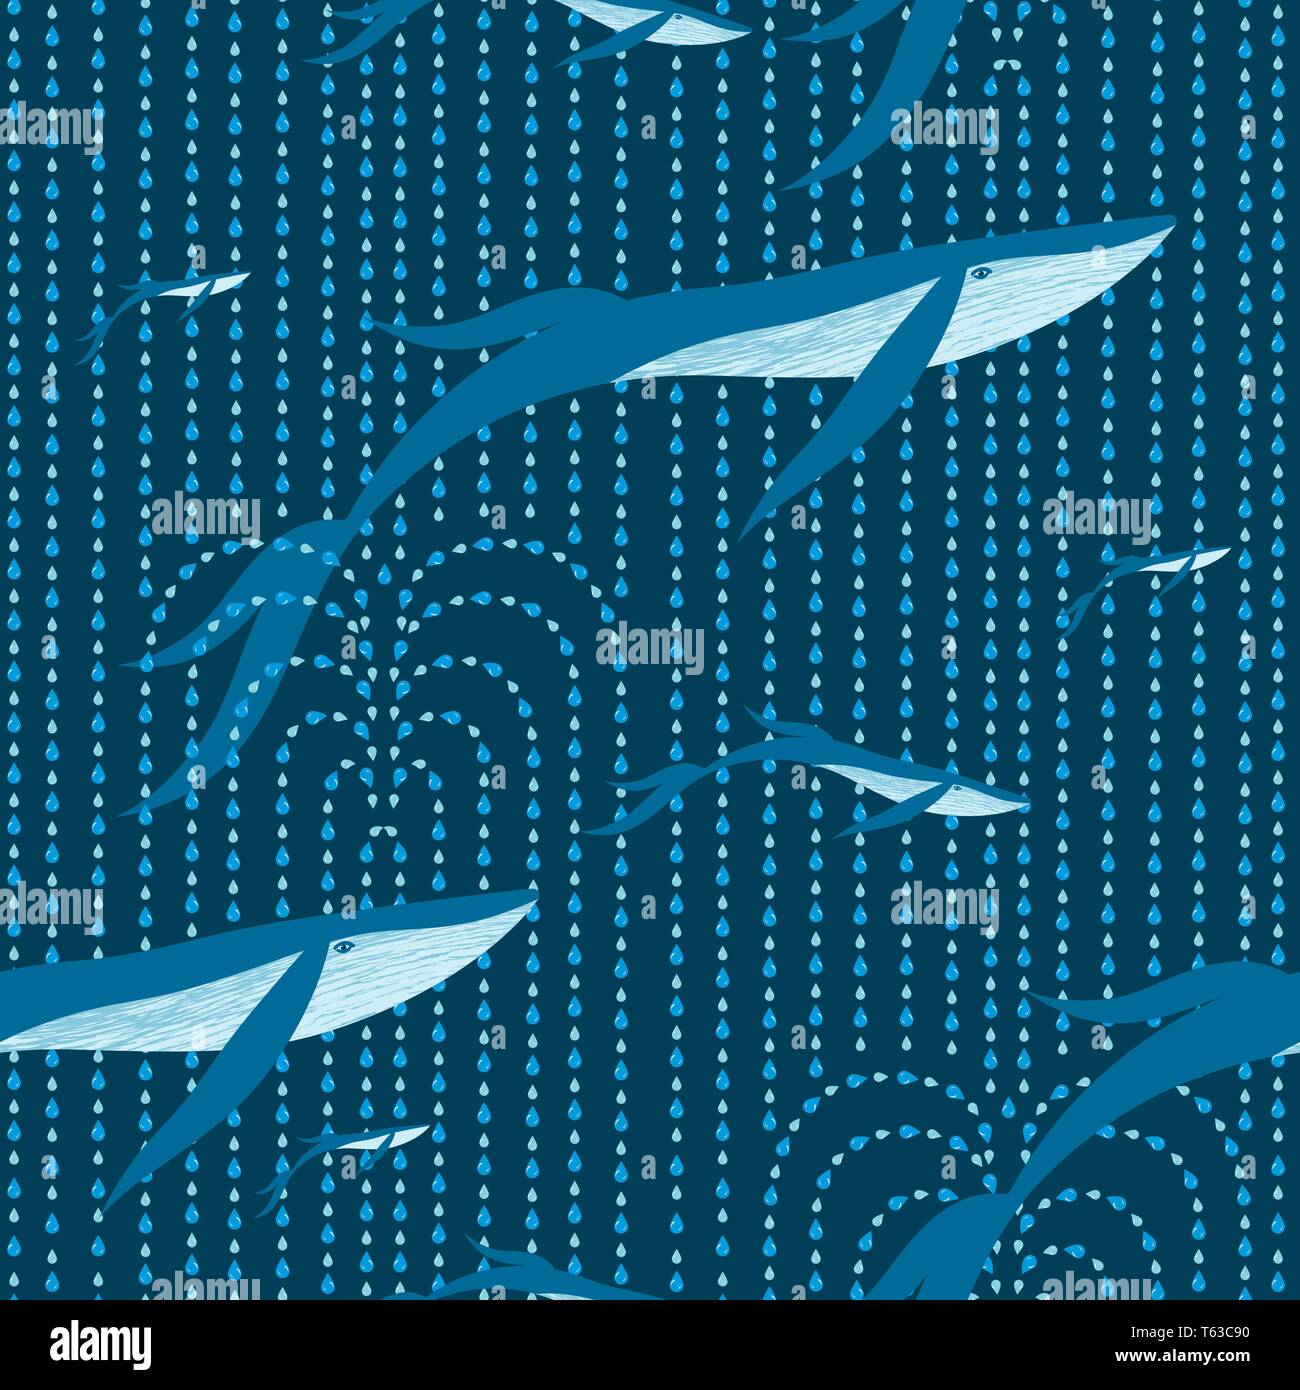 Balene volare nel cielo, fare delle fontane che si trasformano in pioggia. Fantastico illustrazione infantile. Modello senza giunture. Per fabric, imballaggio, sfondo Illustrazione Vettoriale